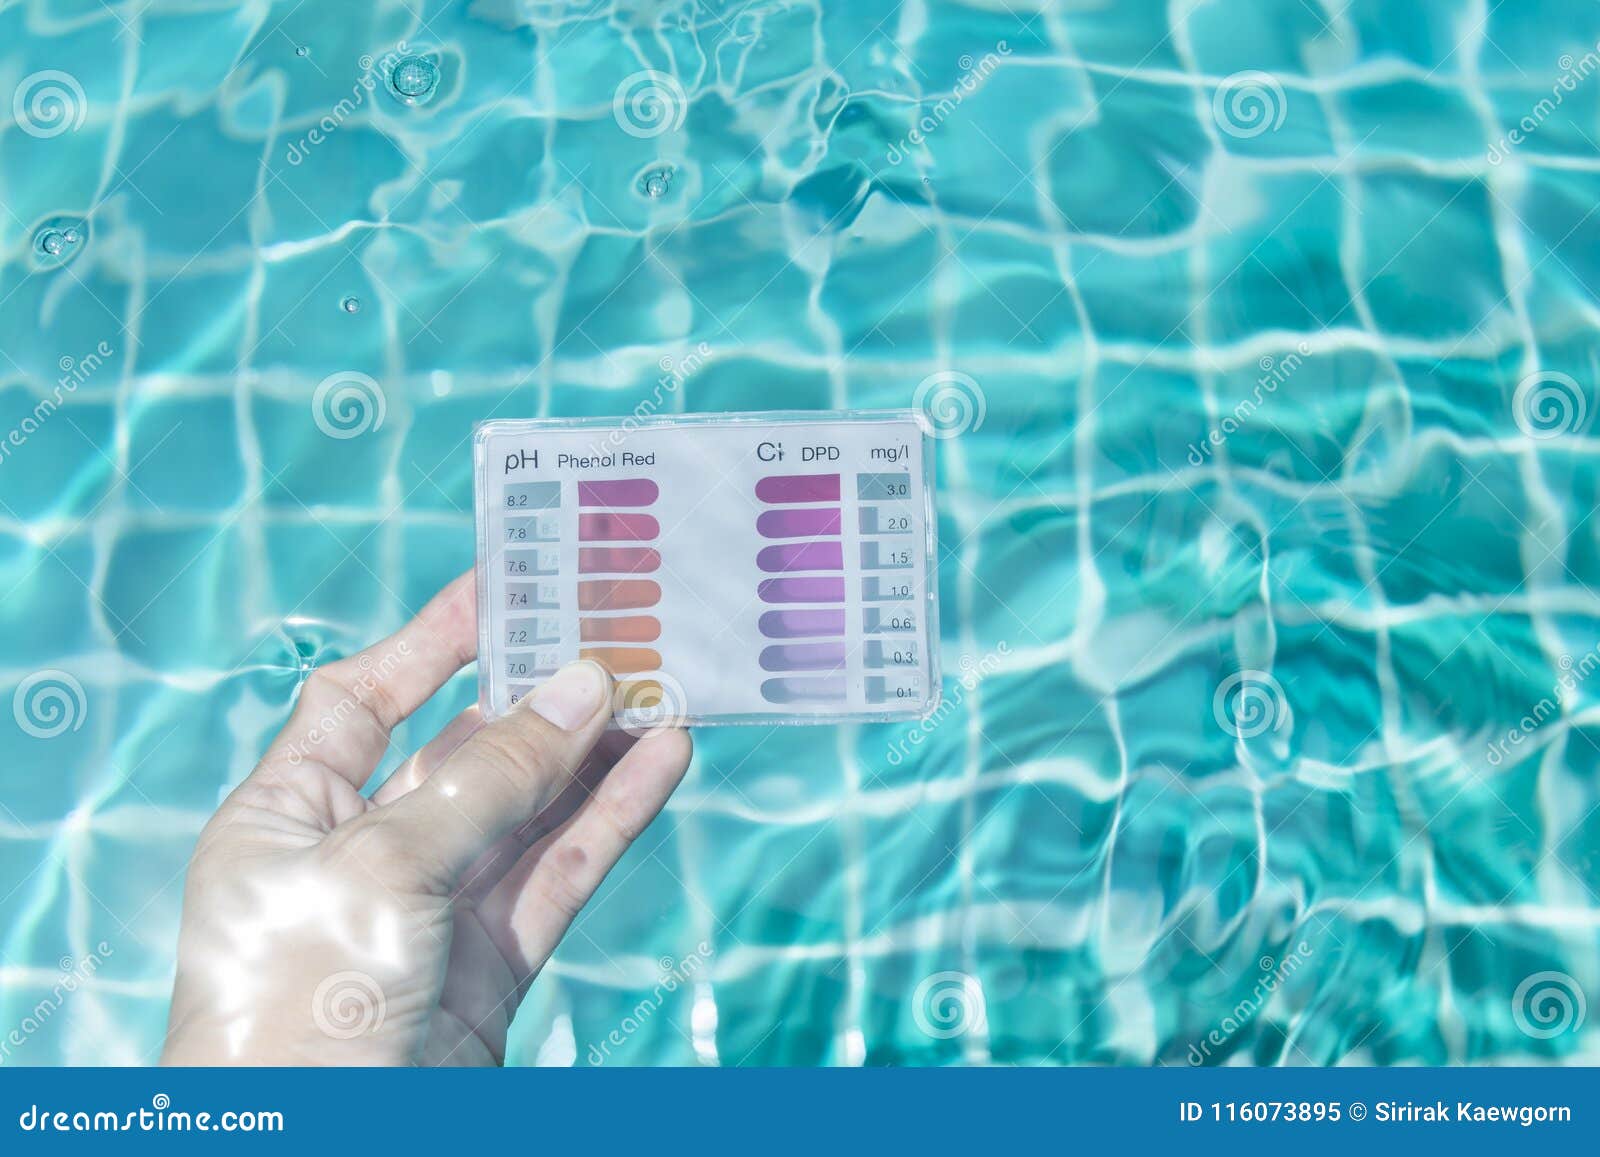 Хлорированная вода в бассейне. Проба воды в бассейне. Измерение хлора в бассейне. Контроль качества воды в бассейне. PH воды в бассейне.